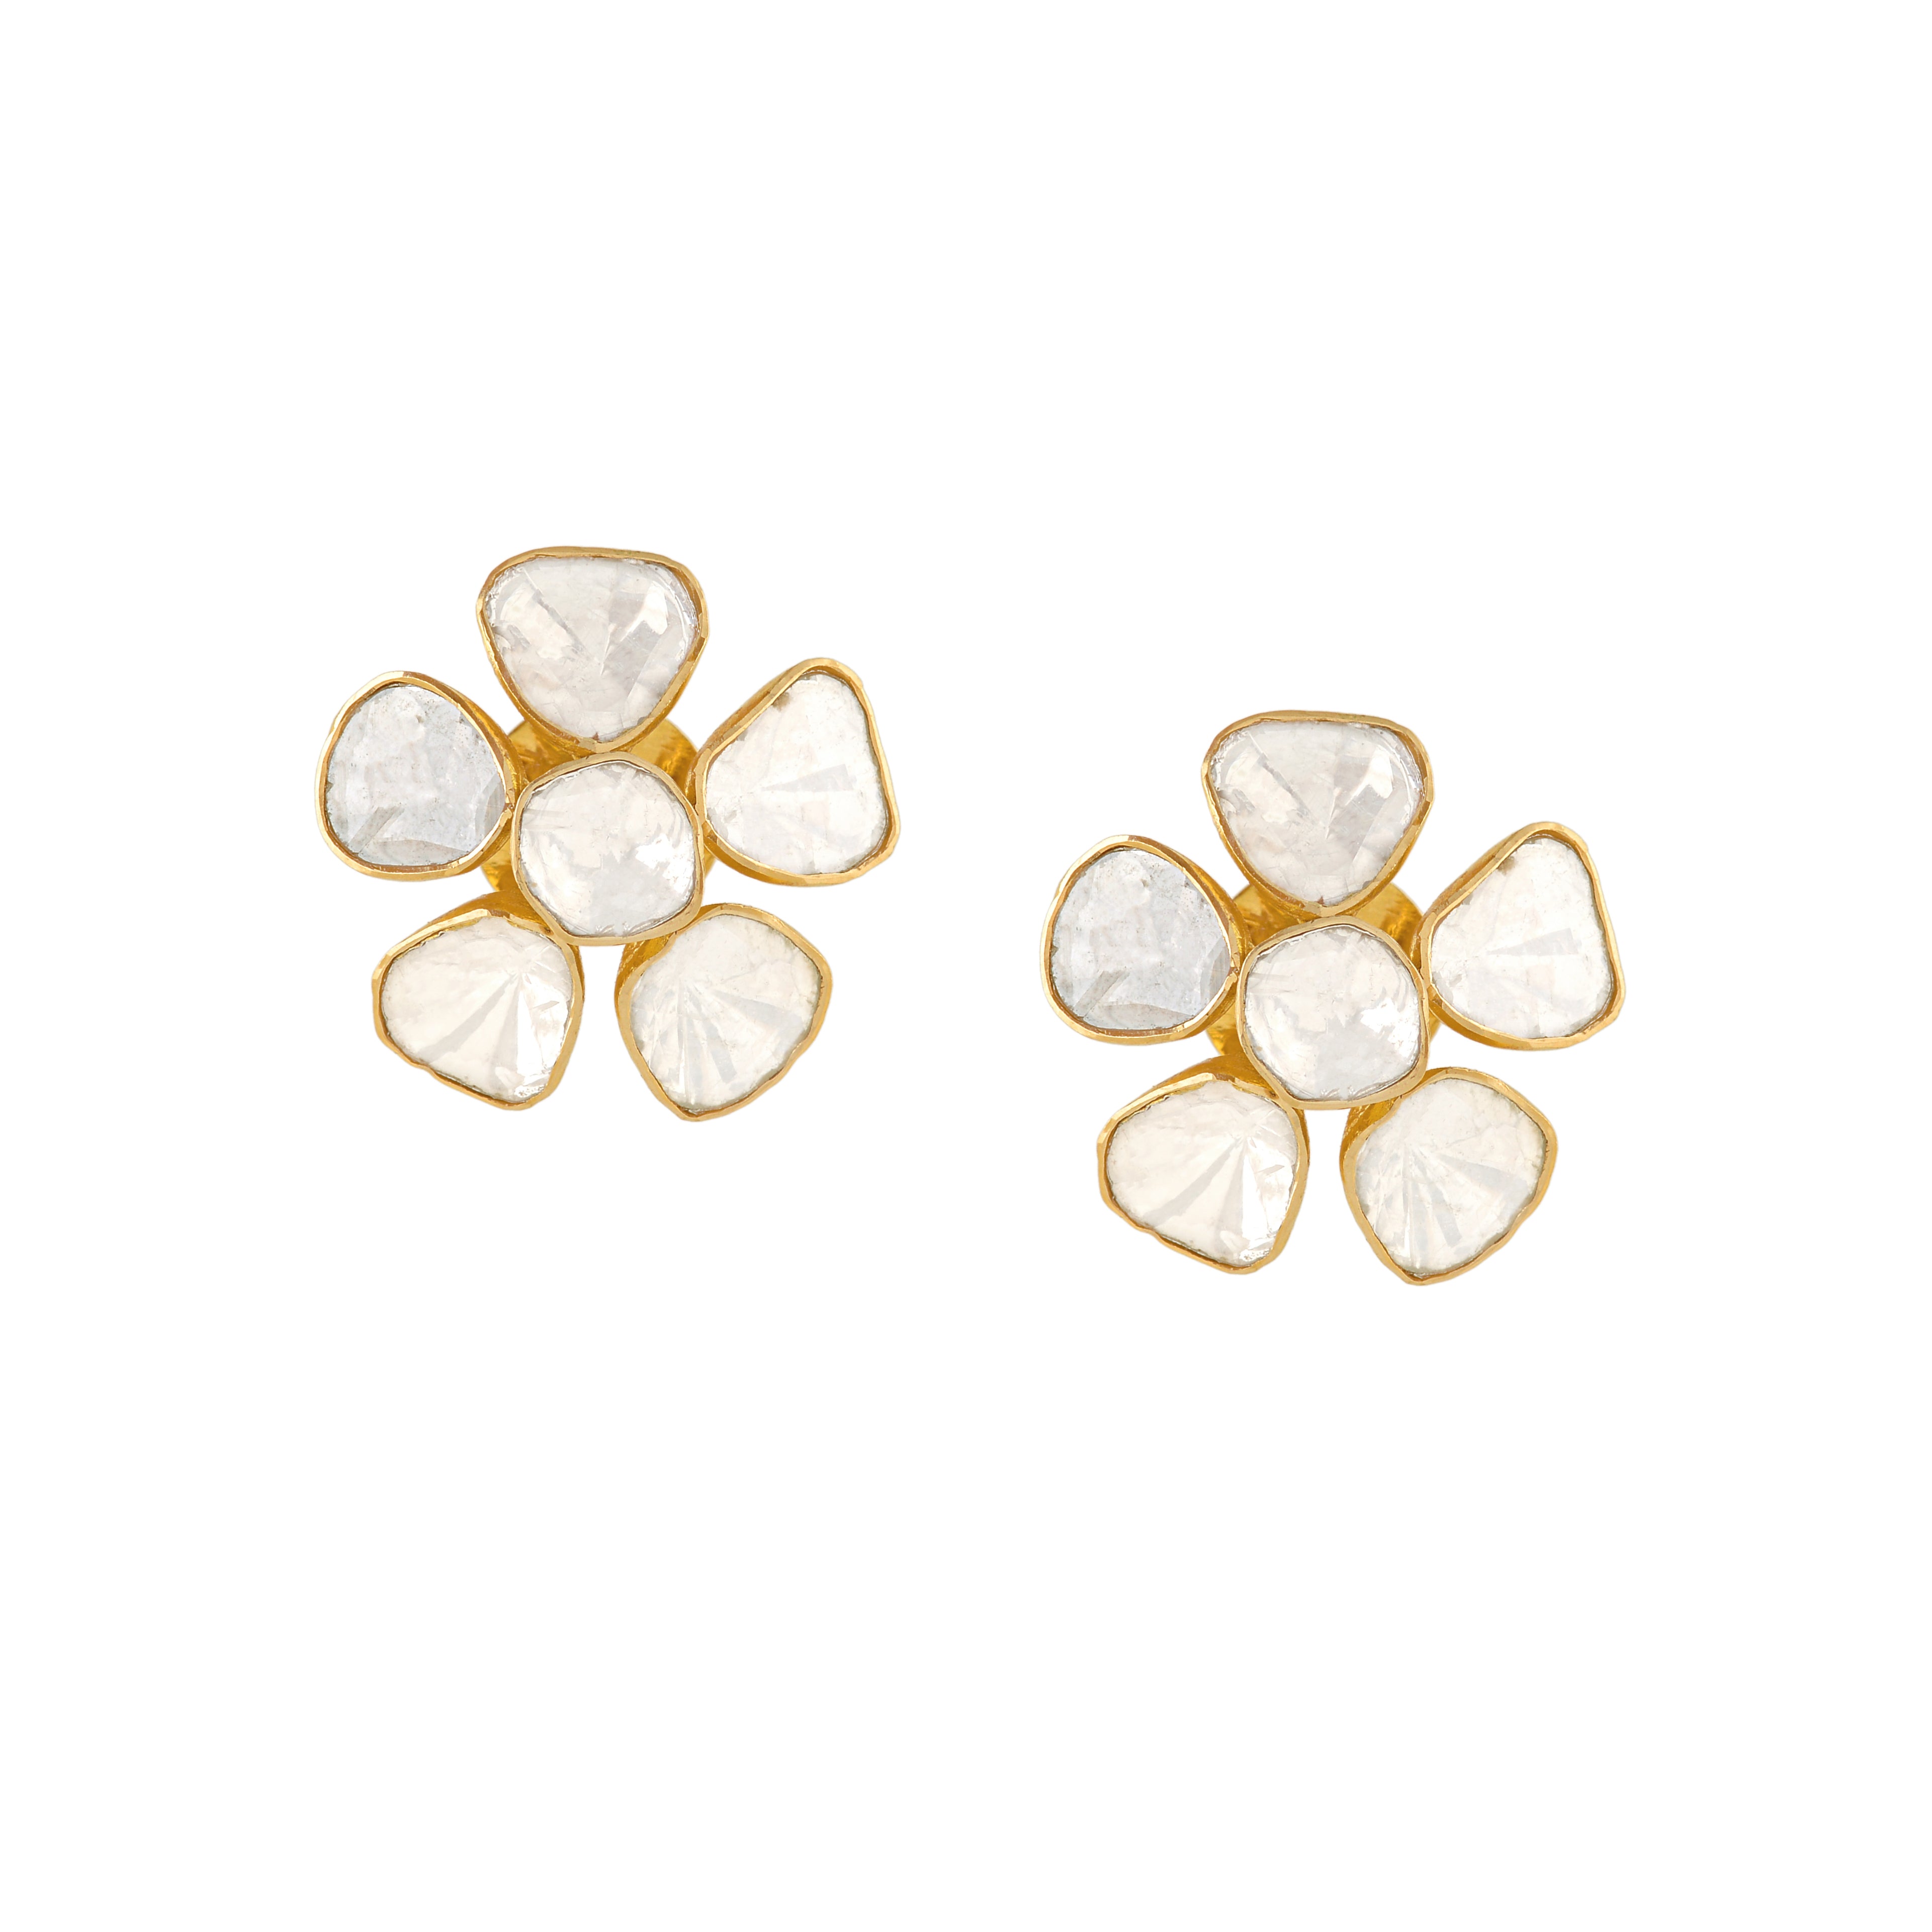 Polki Diamond Stud Earrings in Floral Motif